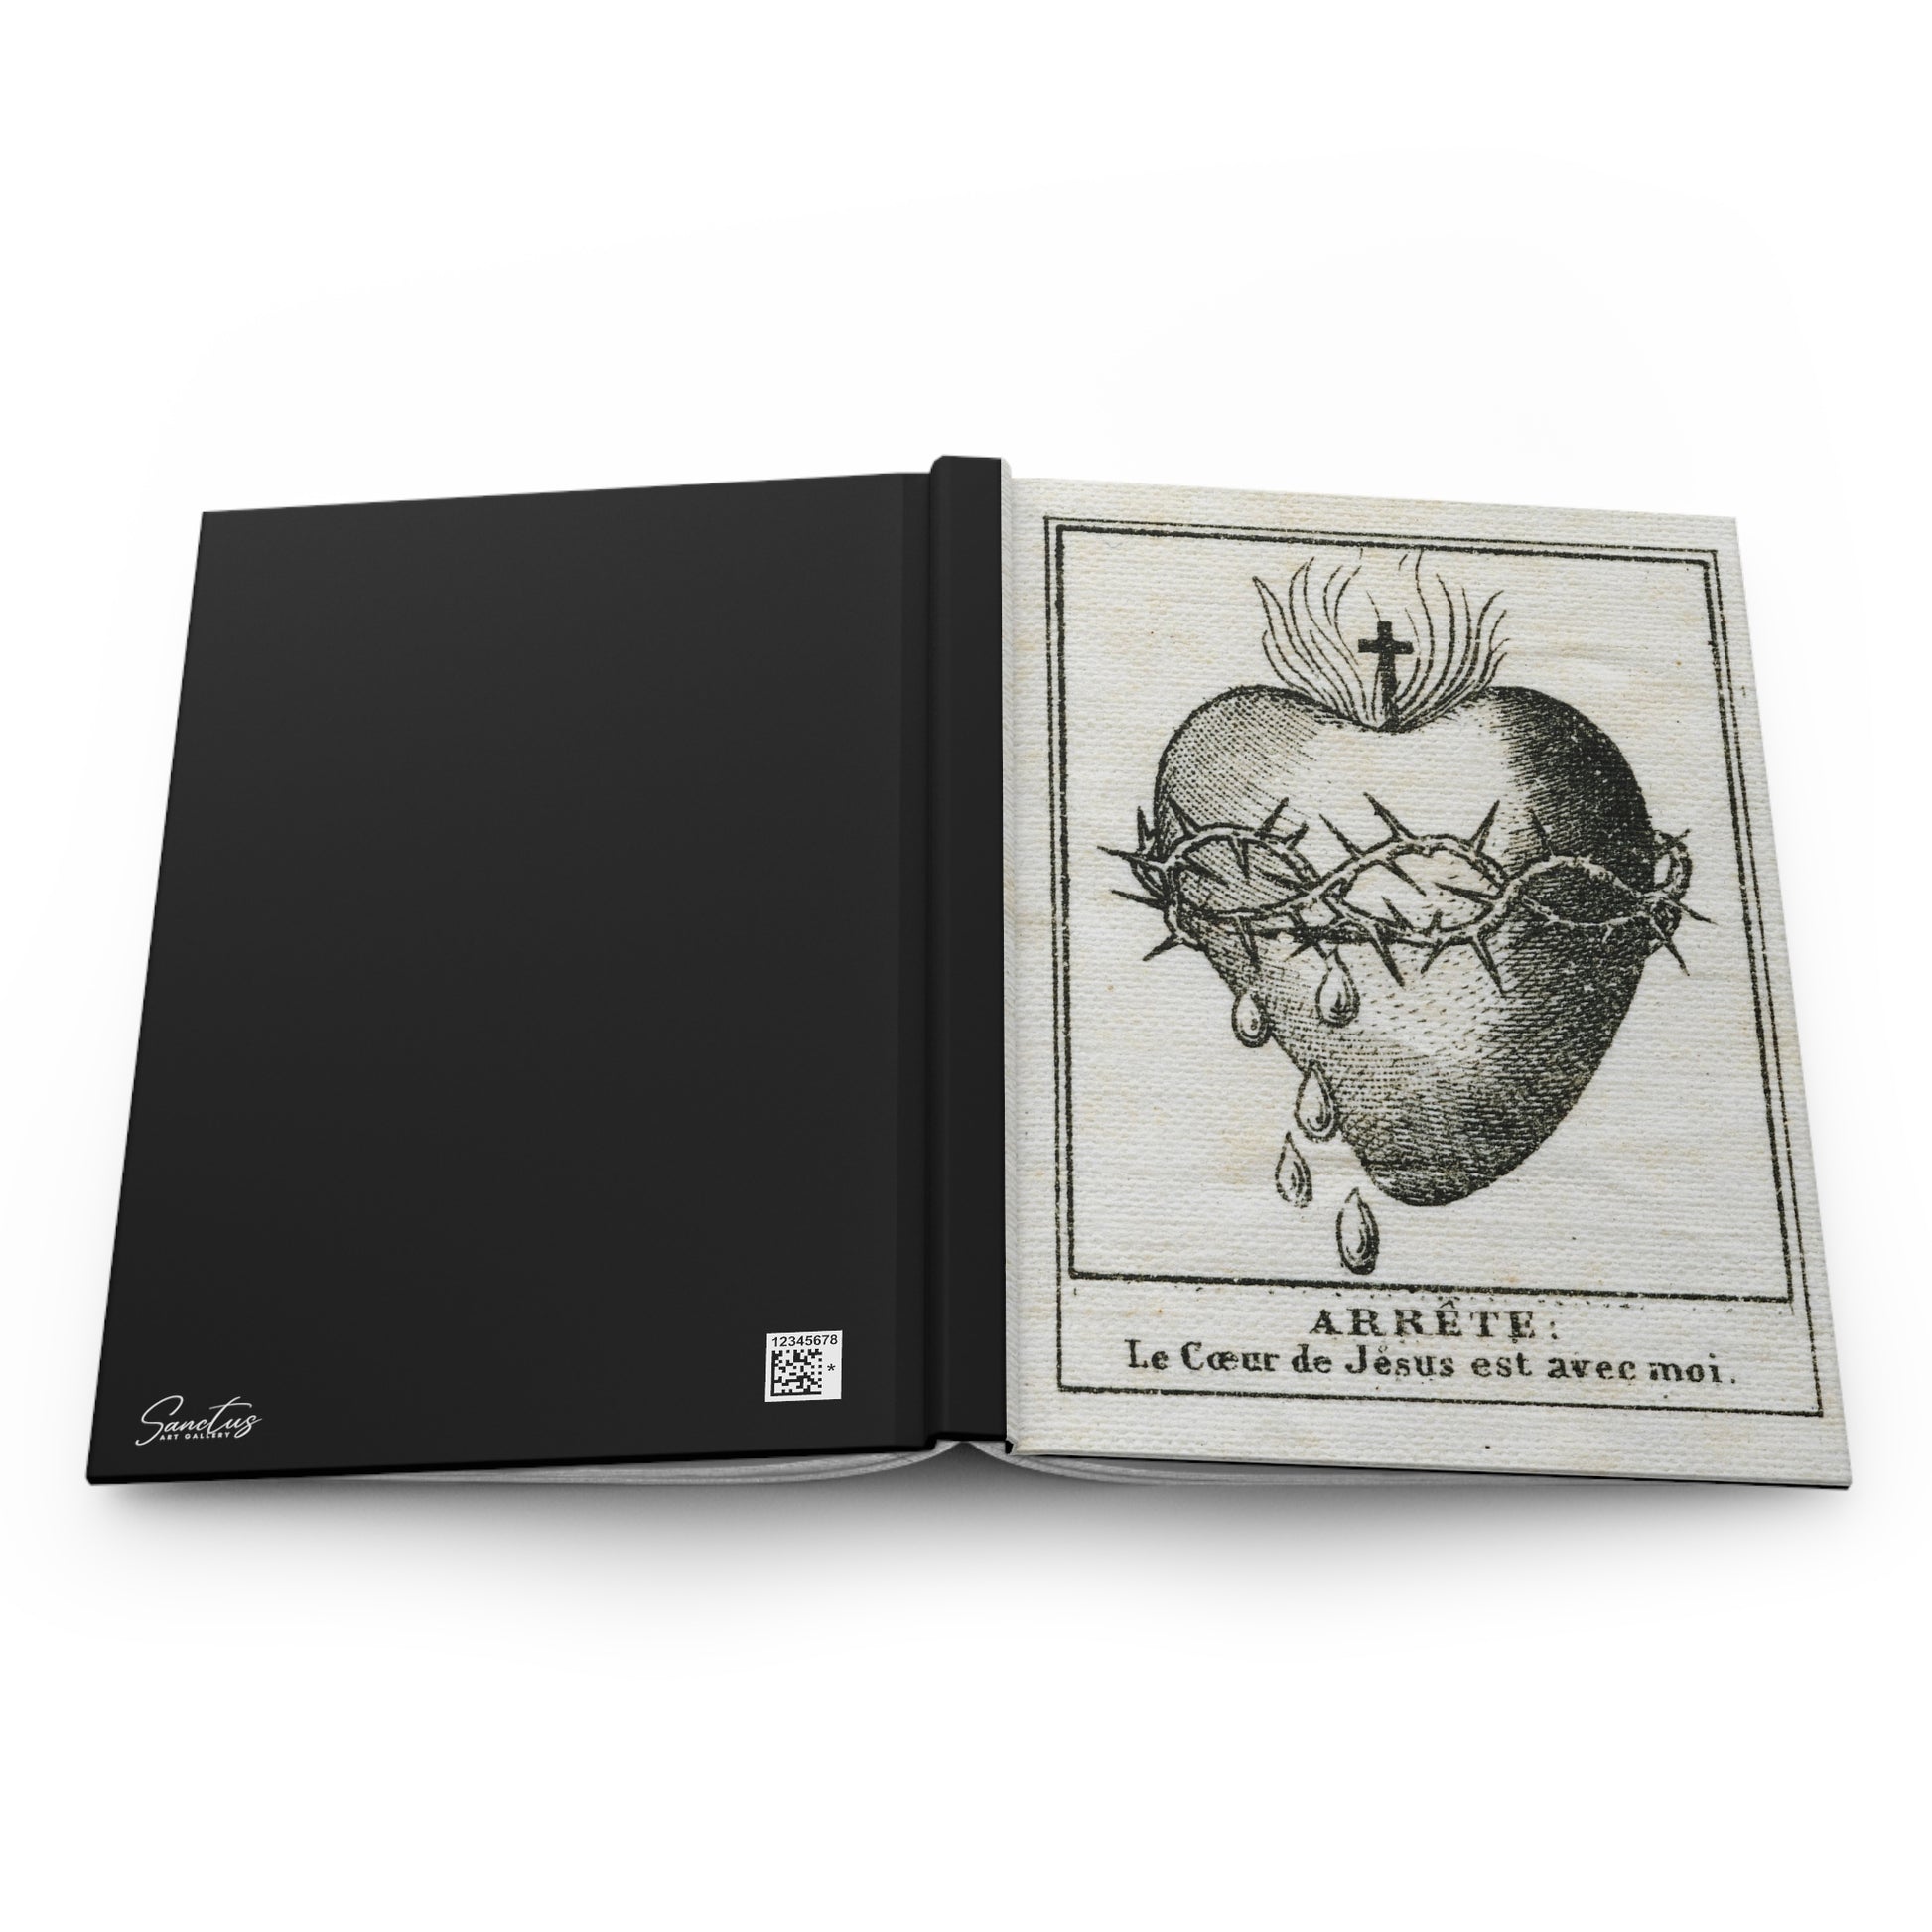 Heart of Jesus Hardcover Journal - Lined Paper - Sanctus Art Gallery